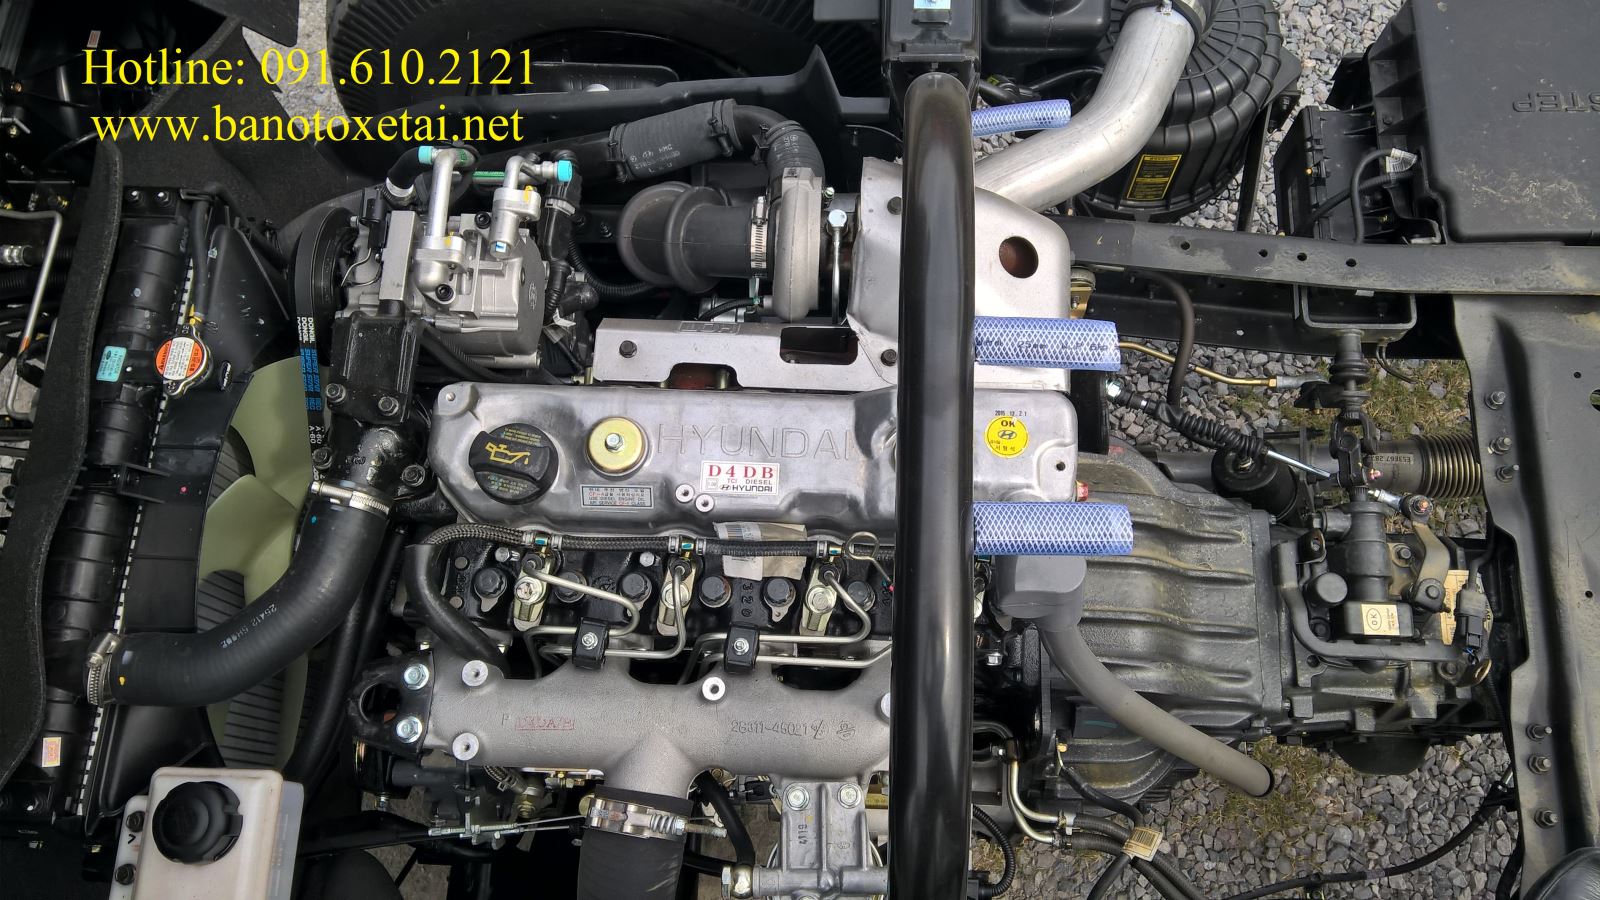 Động cơ Hyundai D4DB trang bị trên HD800 - 0916102121